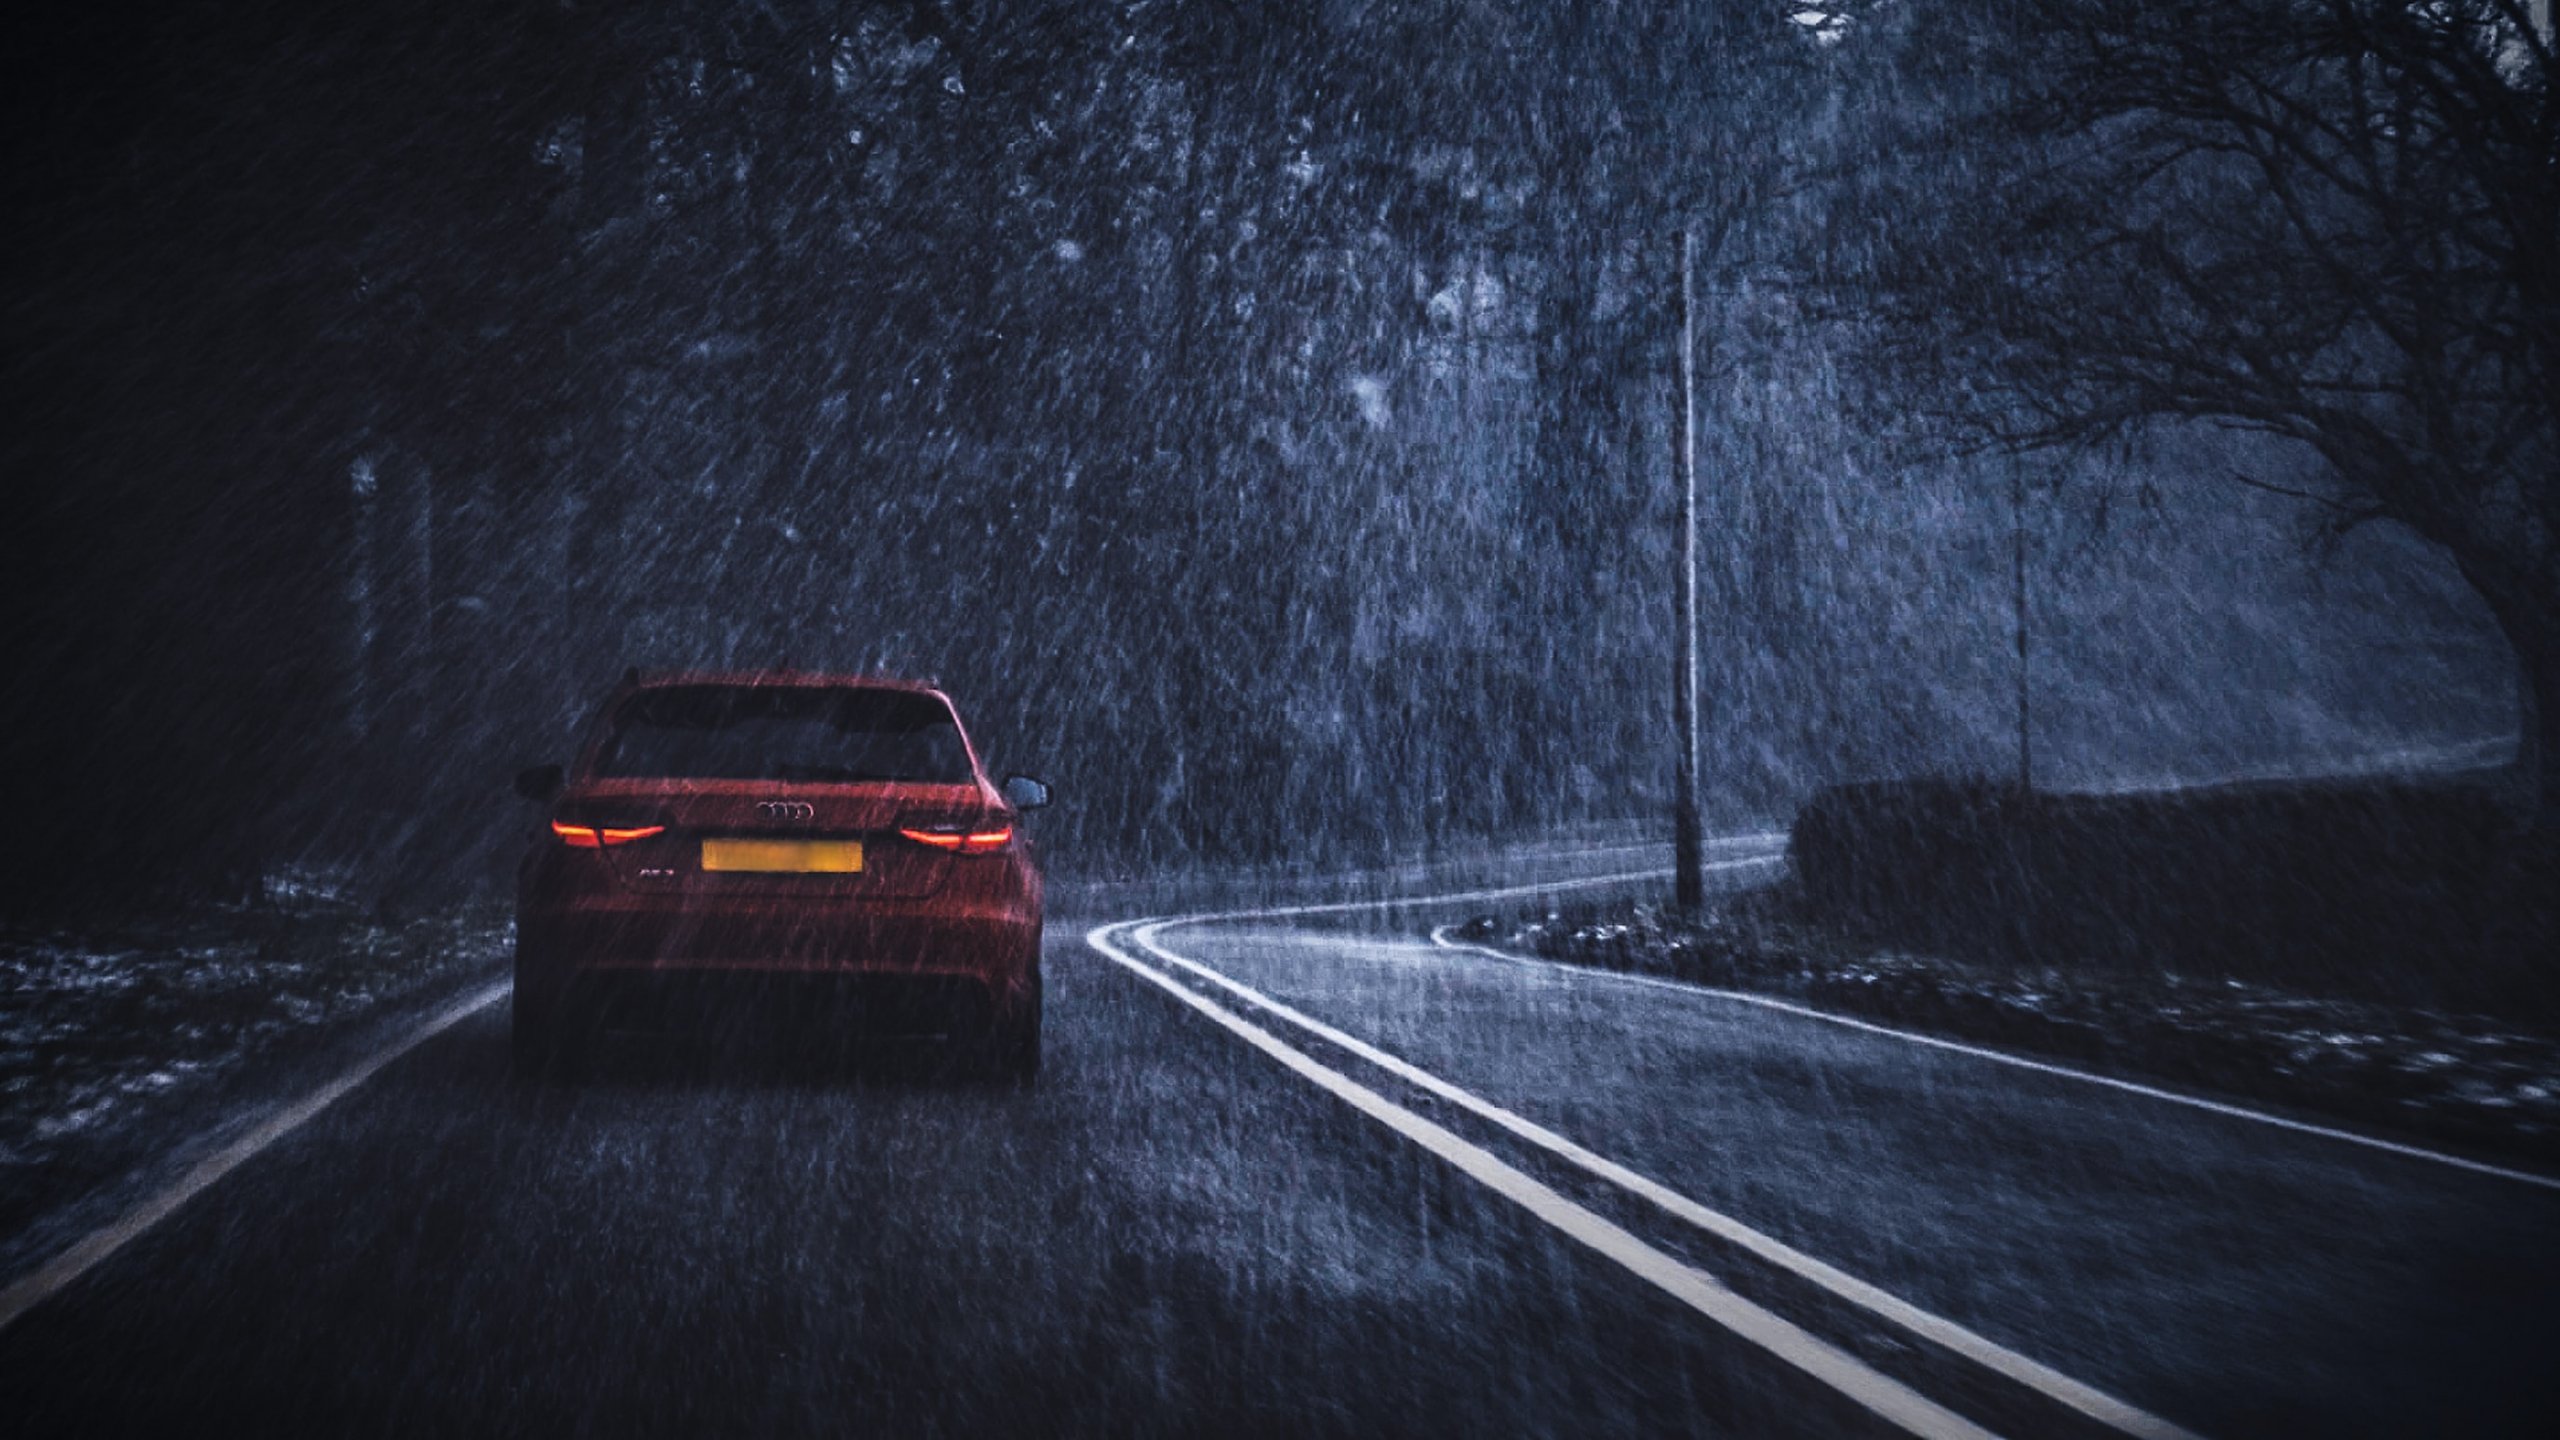 Музыка для дороги в машине. Машина под дождем. Машина ночь дождь. Машина ночью на дороге. Дорога дождь машина.